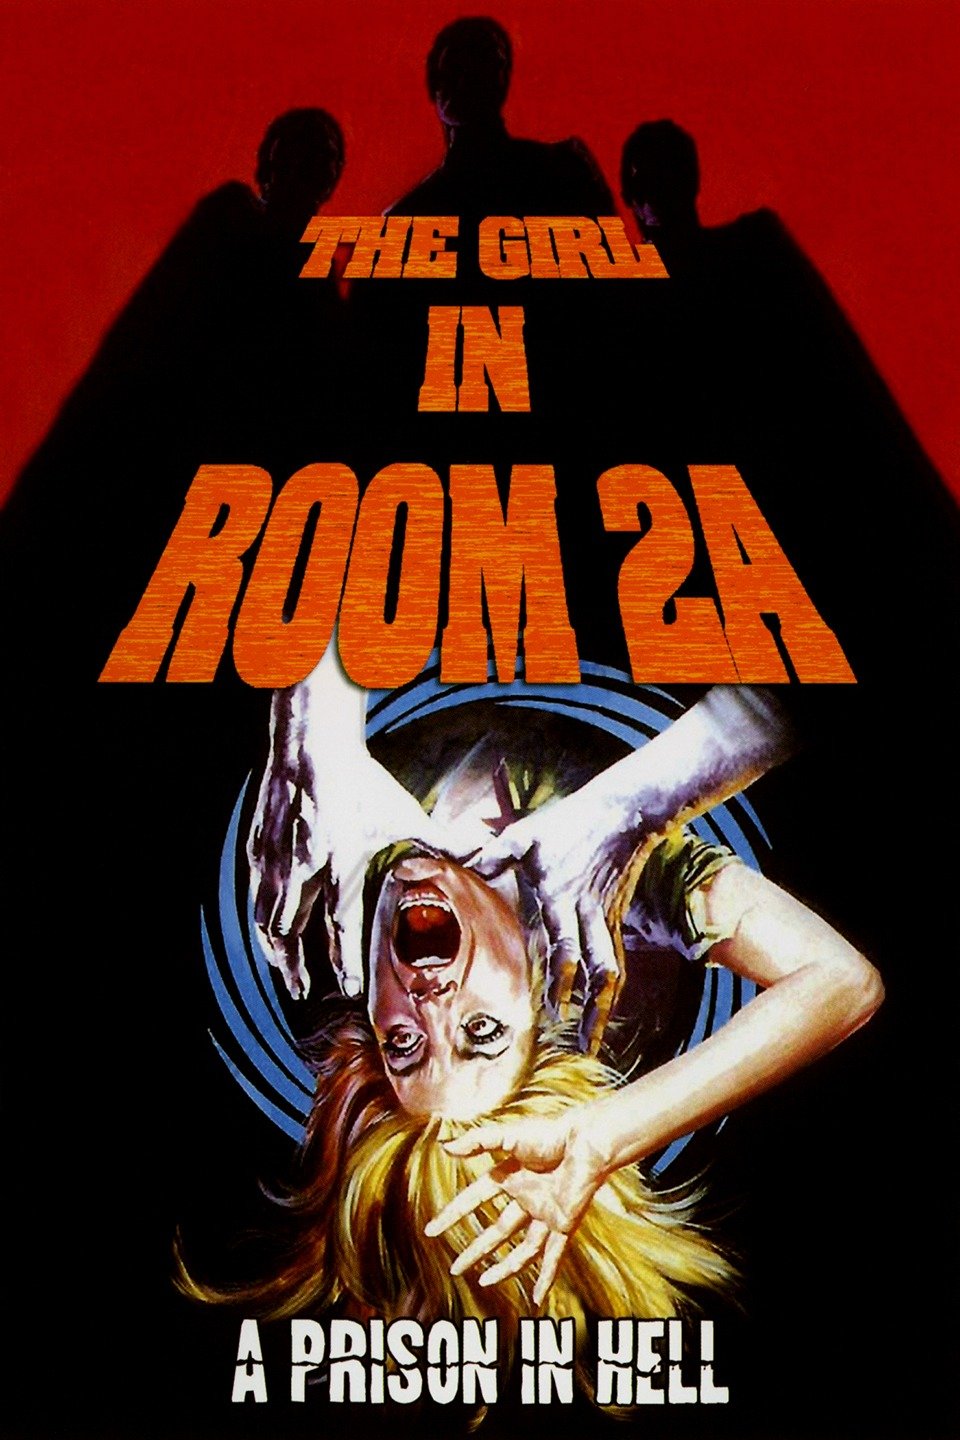 فيلم 1974 La casa della paura / The Girl in Room 2A مترجم